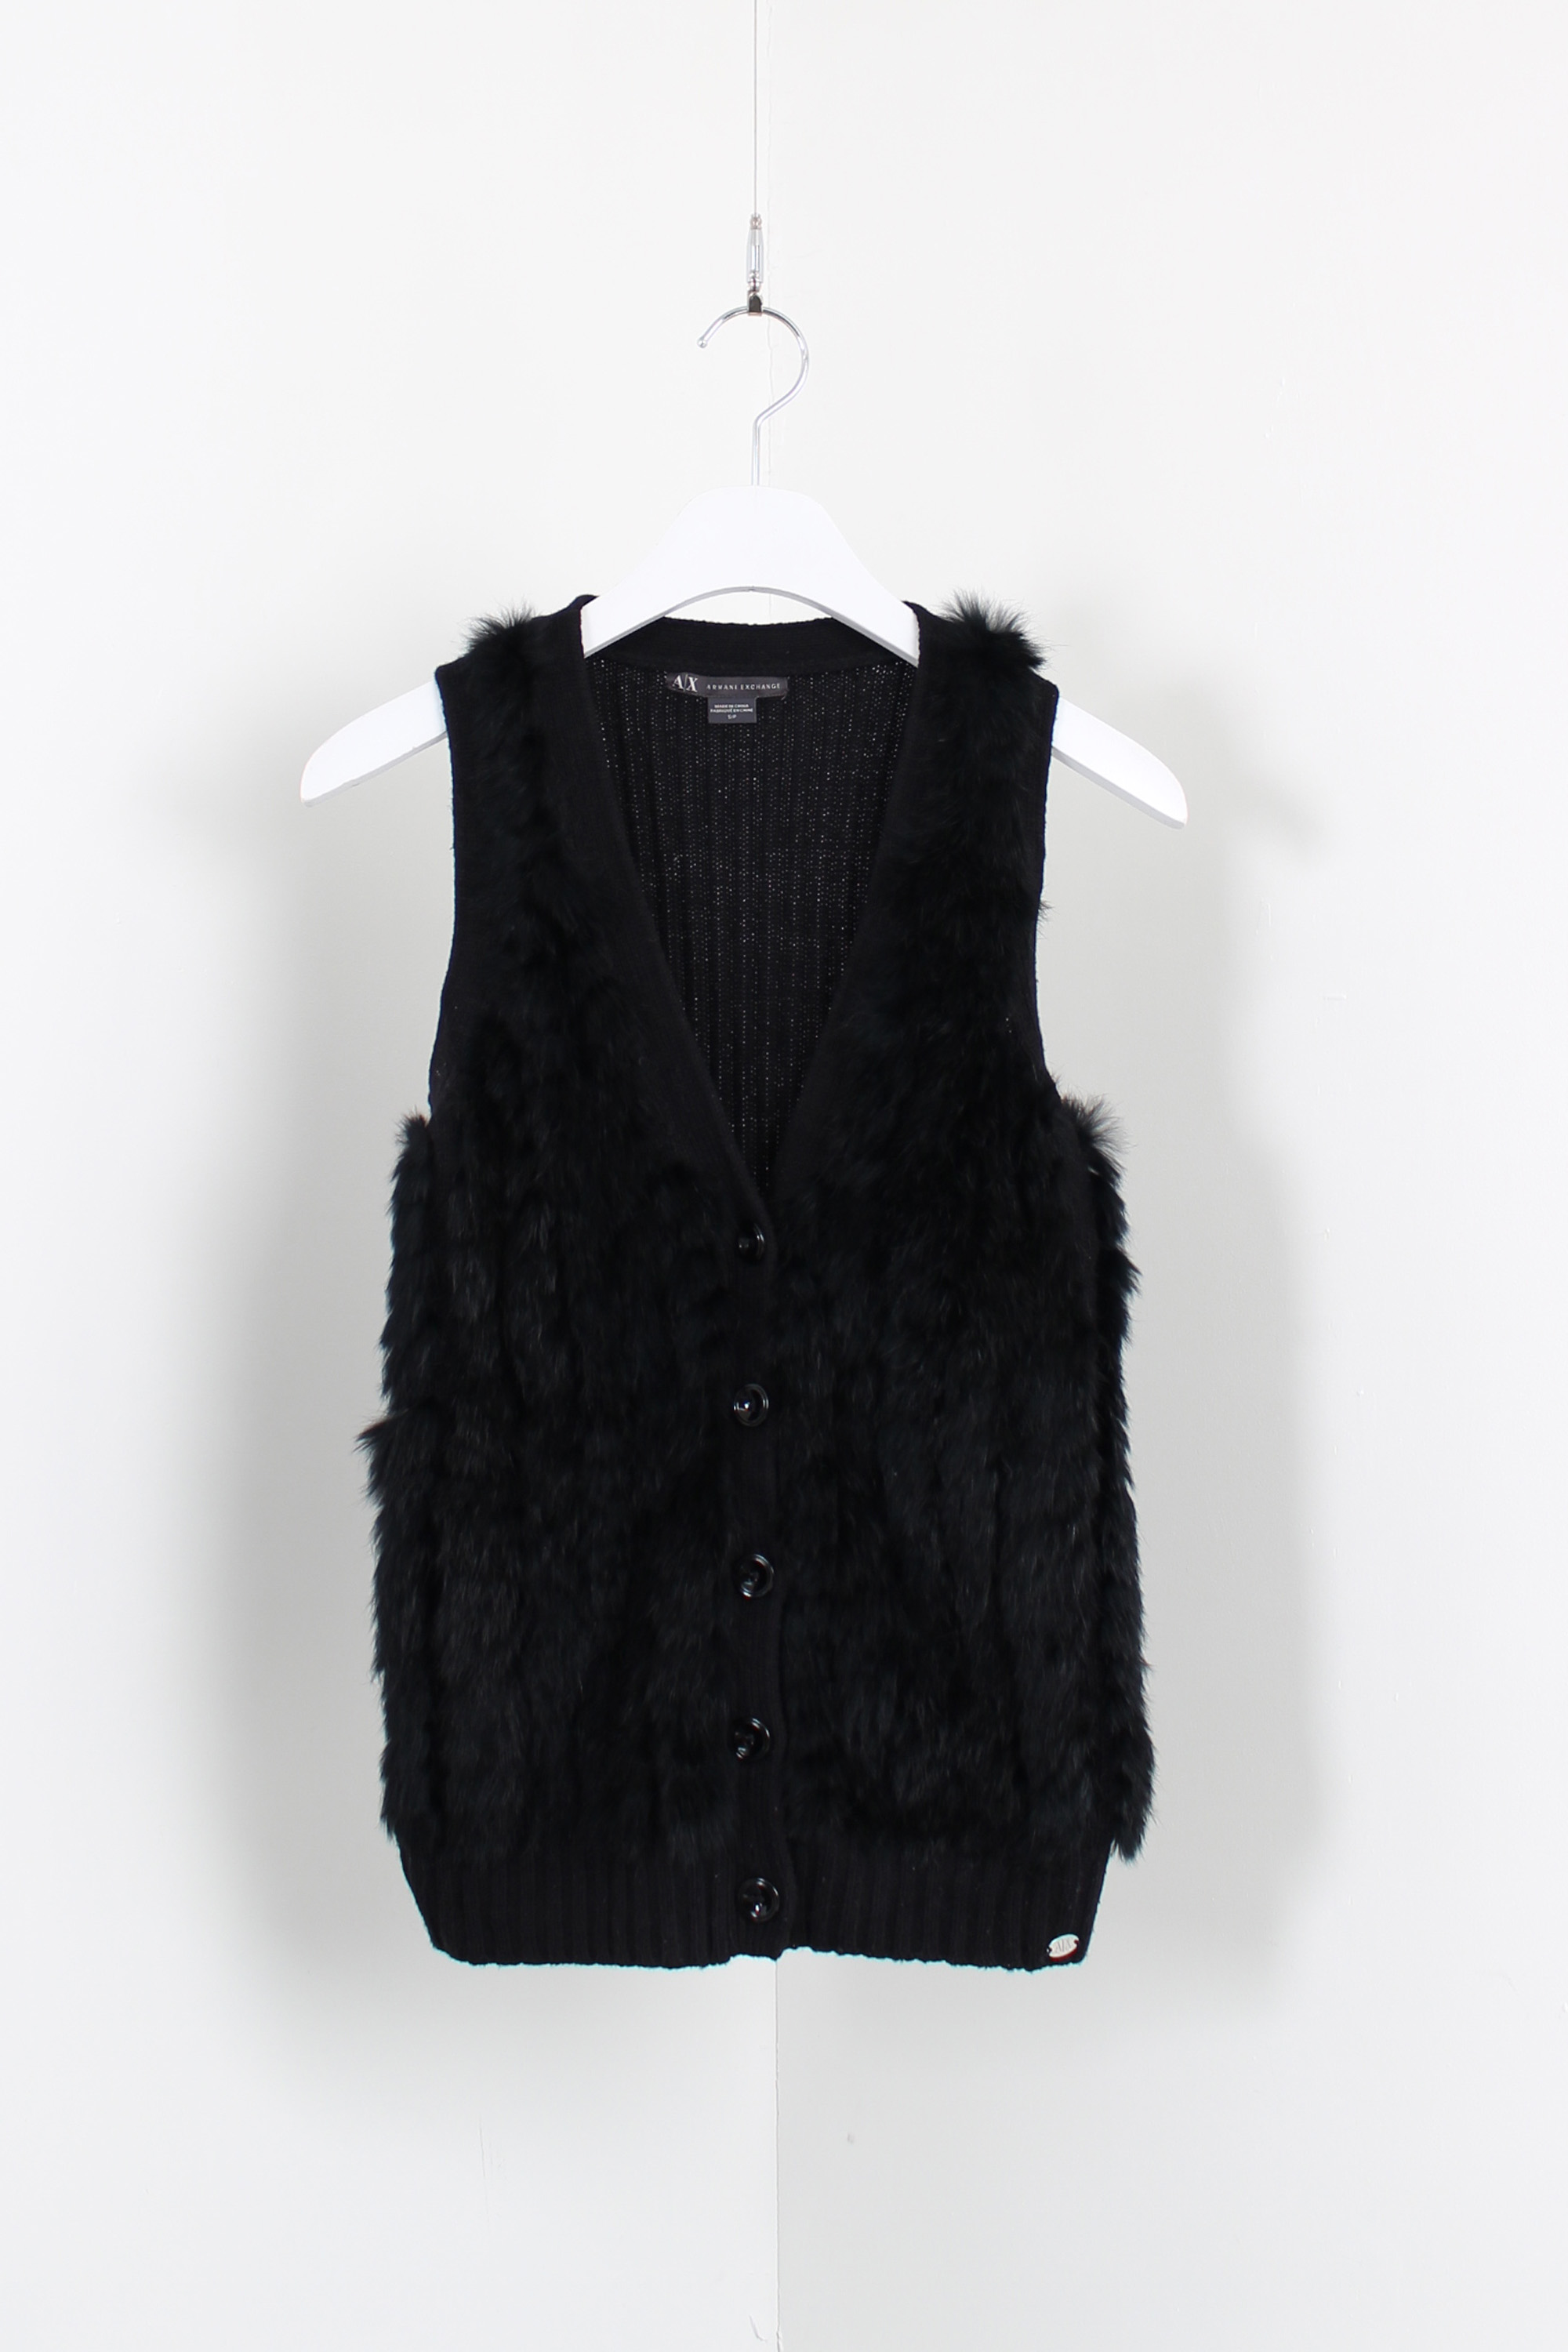 A|X Armani Exchange fur vest